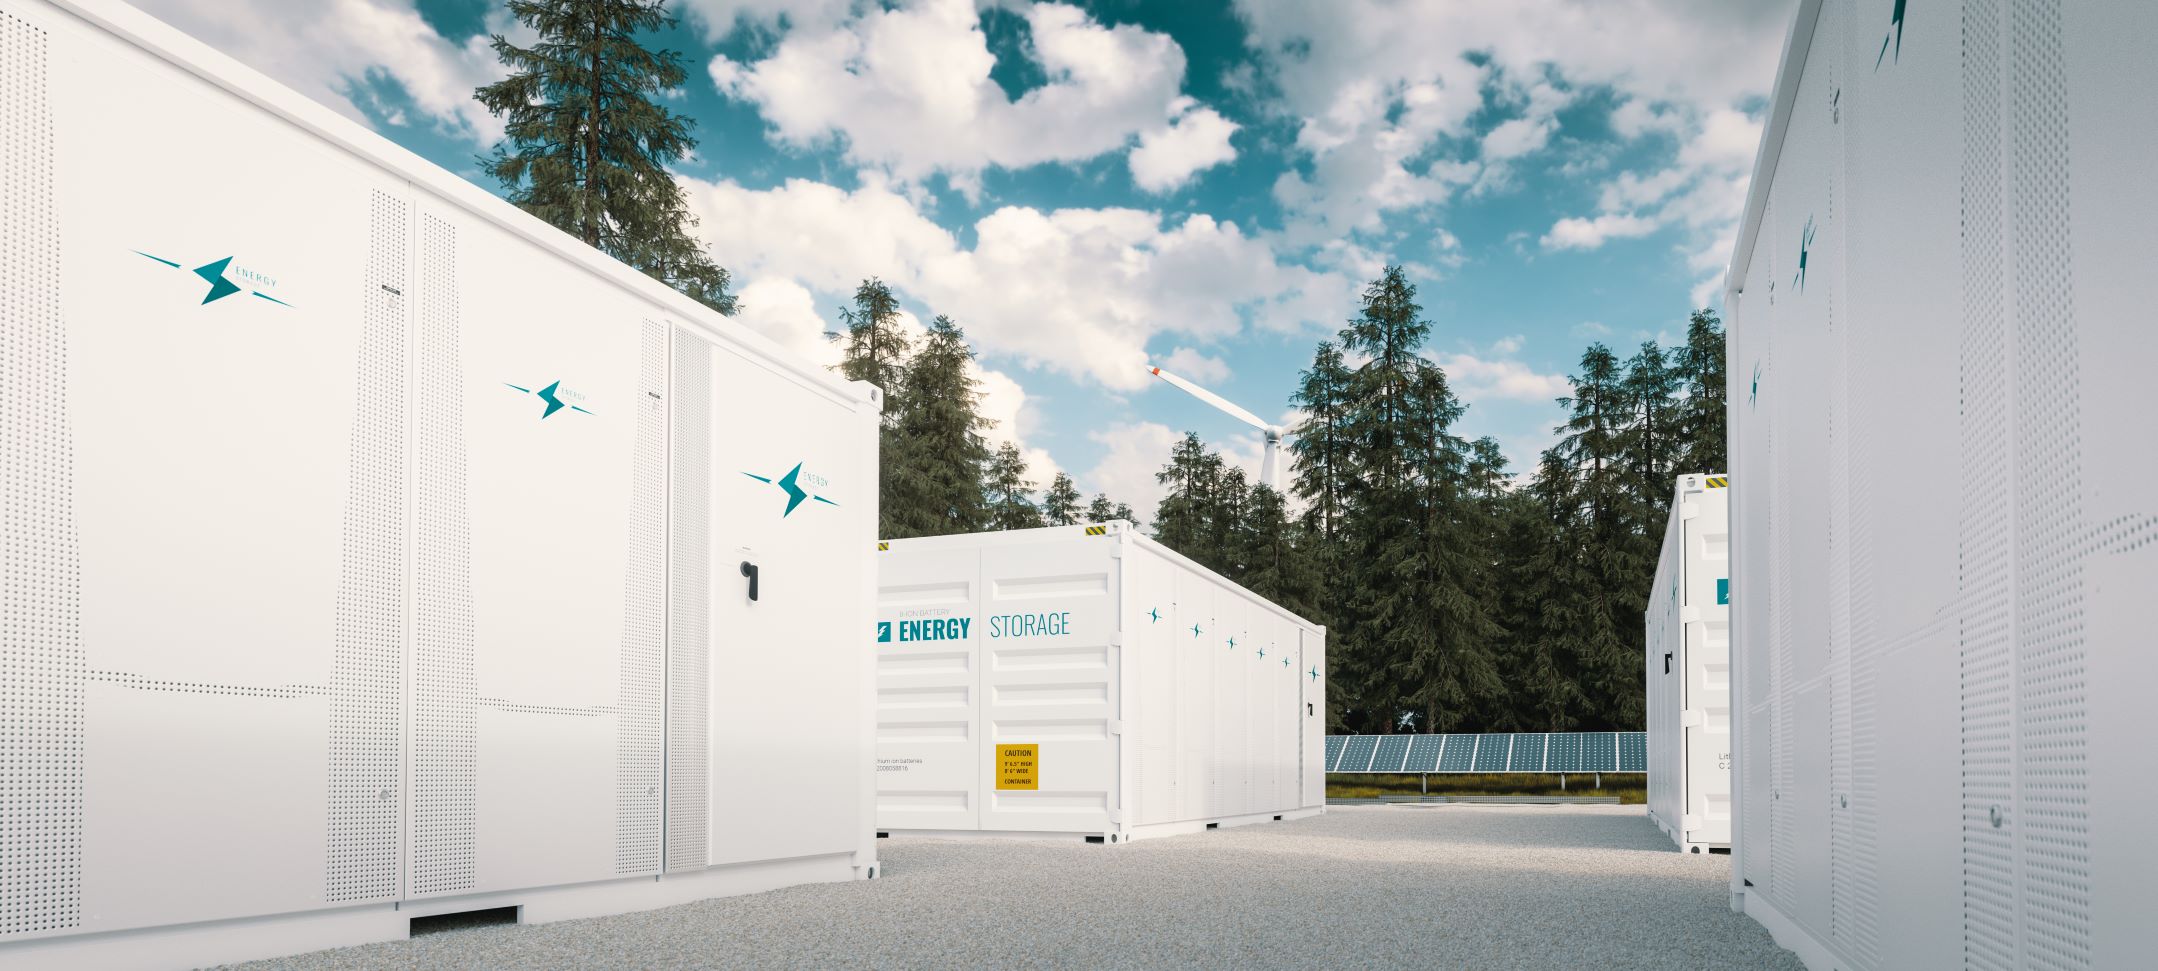 energy storage unit